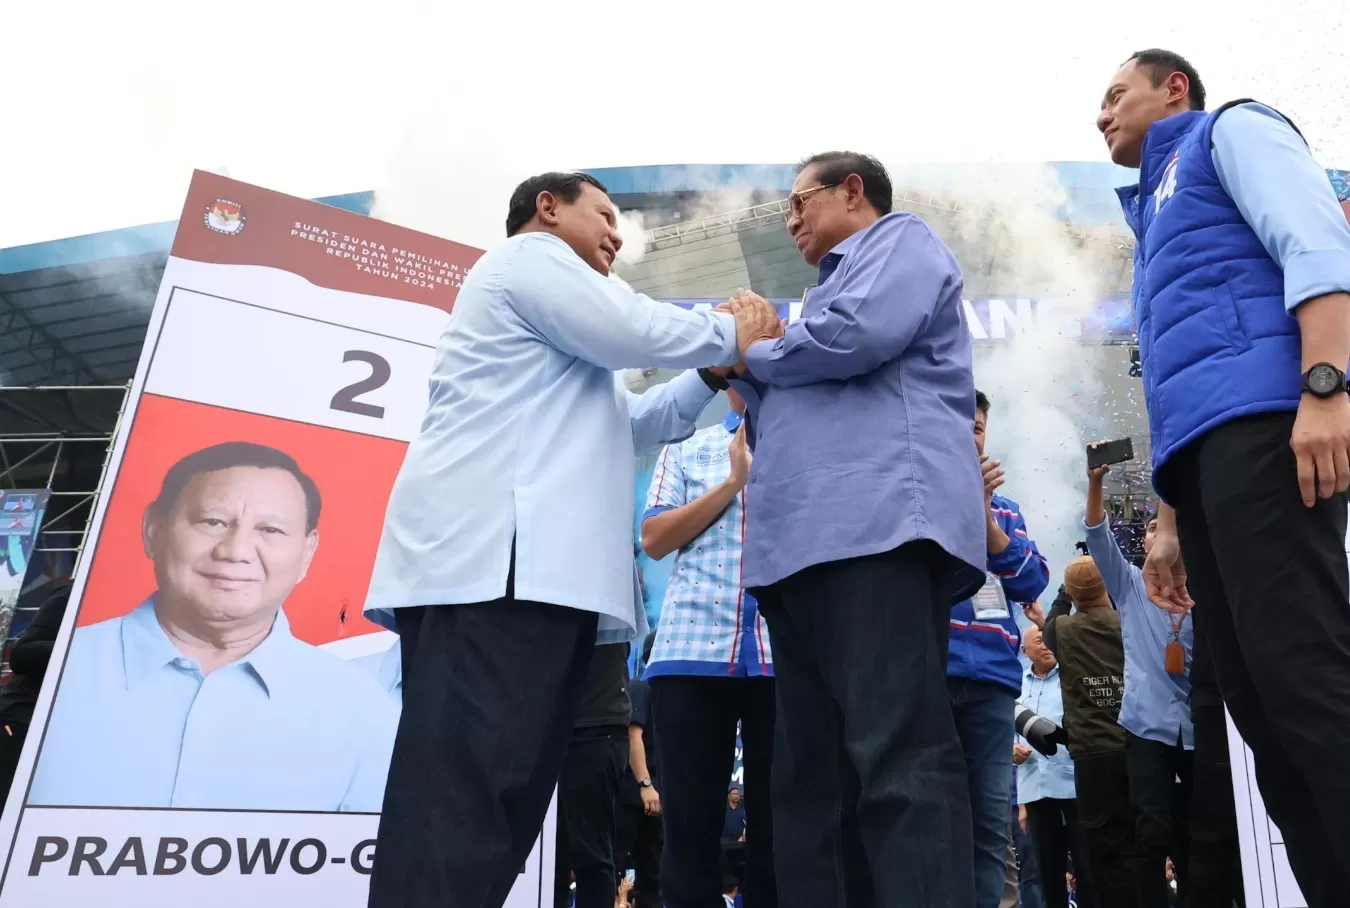 Bila Terpilih Presiden ke 8, Prabowo Janji Tetap Mengayomi Semua Pihak: Rakyat Kehendaki Kerukunan